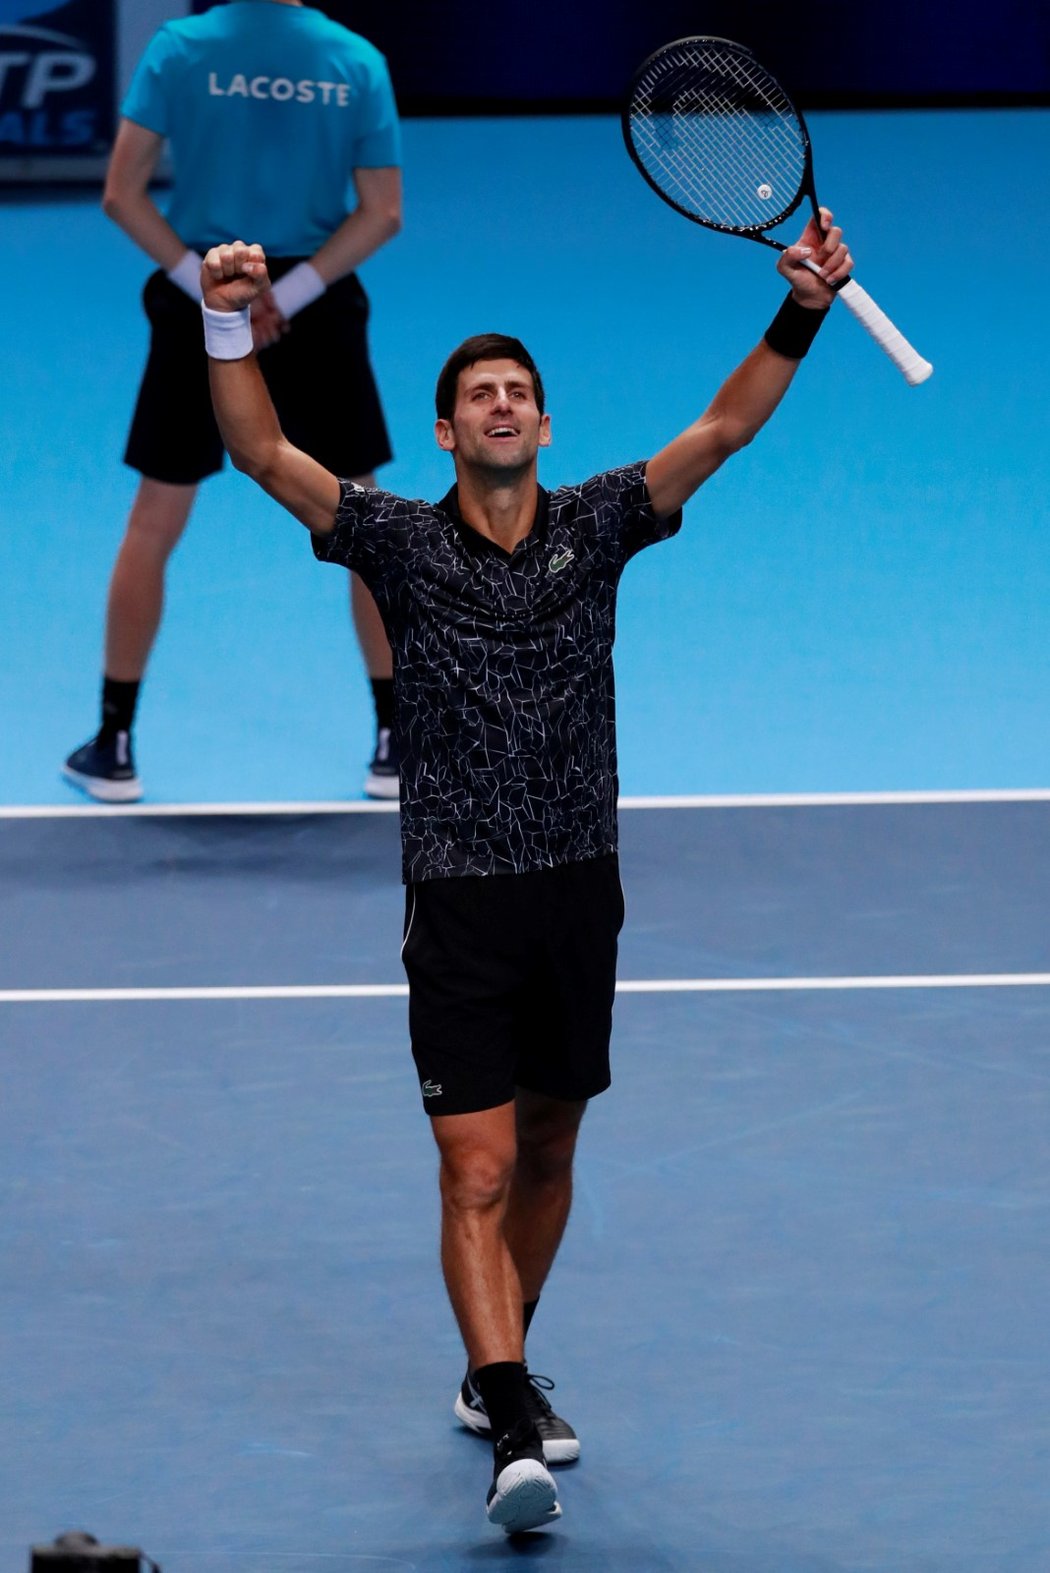 Novak Djokovič potvrdil v úvodním utkání Turnaje mistrů roli světové jedničky a porazil Johna Isnera